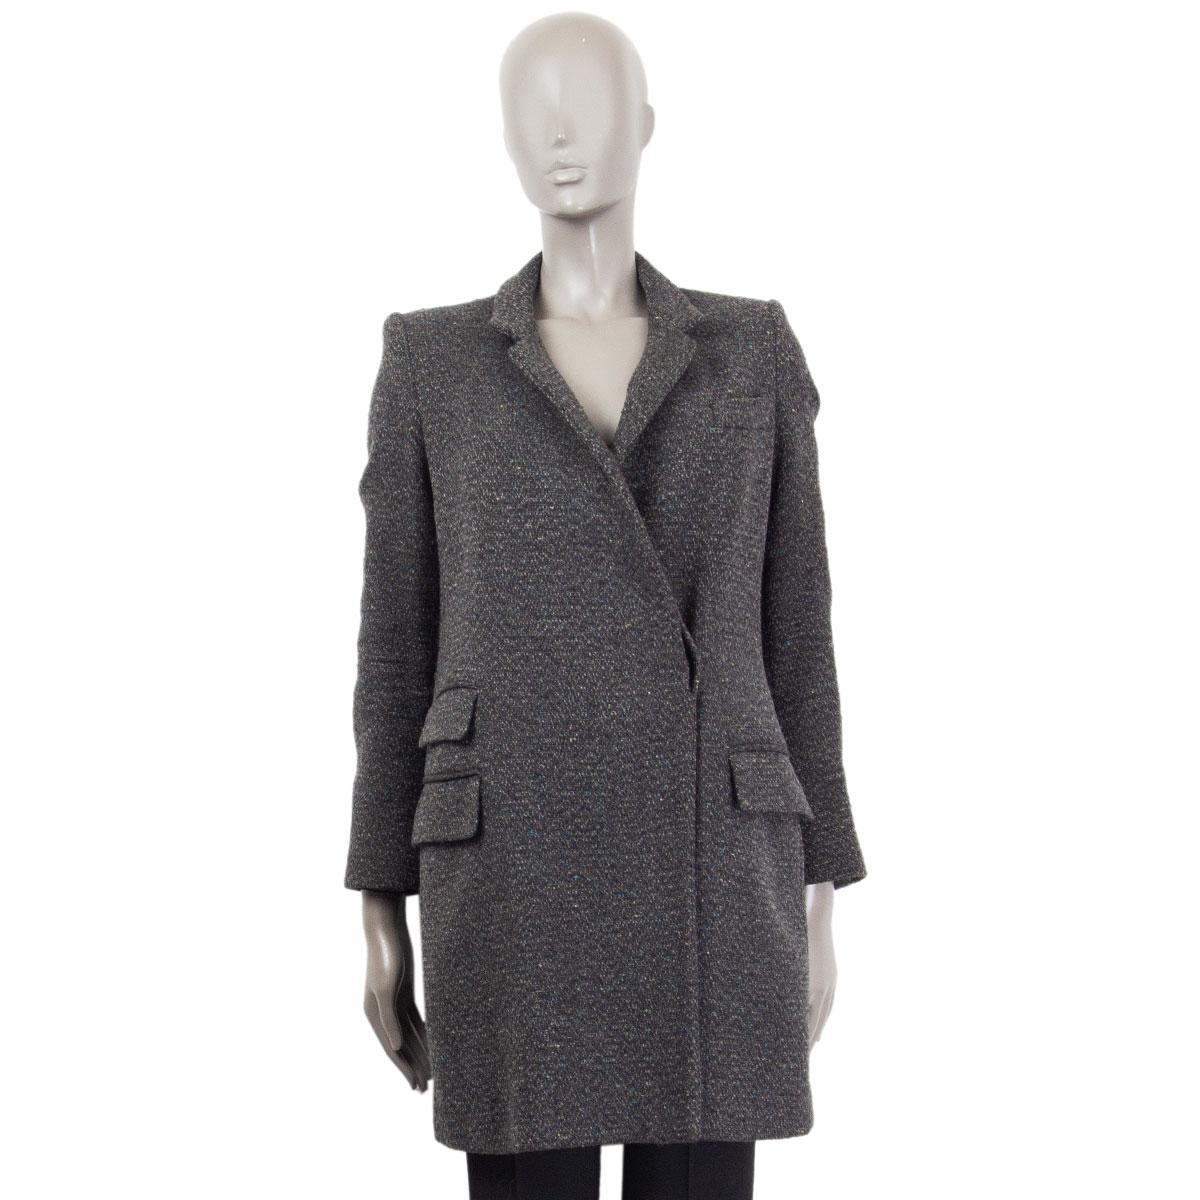 Black STELLA MCCARTNEY dark grey & multicolor wool TWEED Coat Jacket 38 XS For Sale